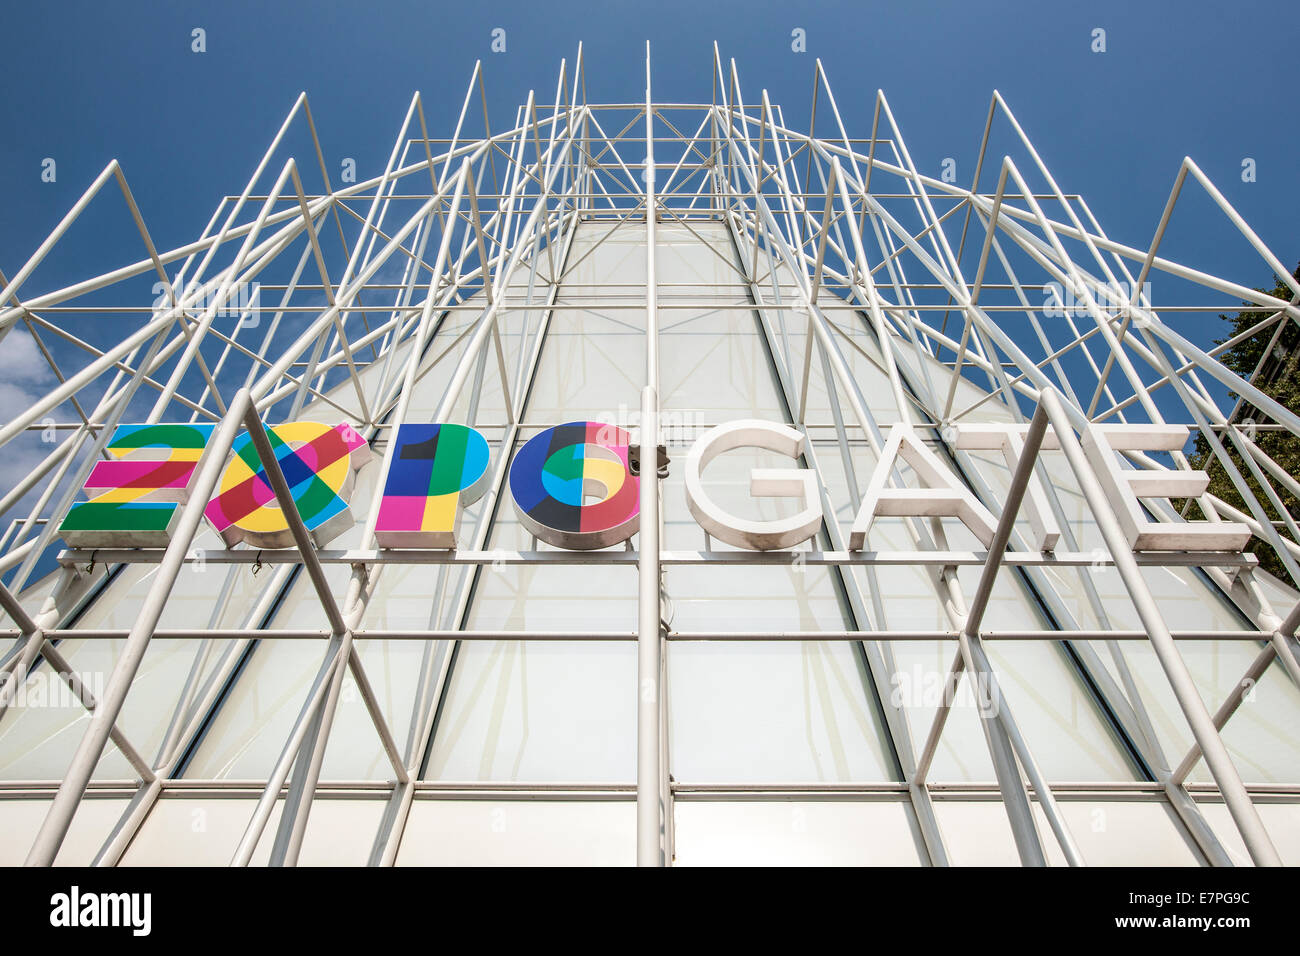 Milano, Milán, la Expo 2015, EXPOGATE, logo, viajes, feria, Exposición Universal, la ciudad, la puerta, Infopoint, Lombardía, Italia Foto de stock